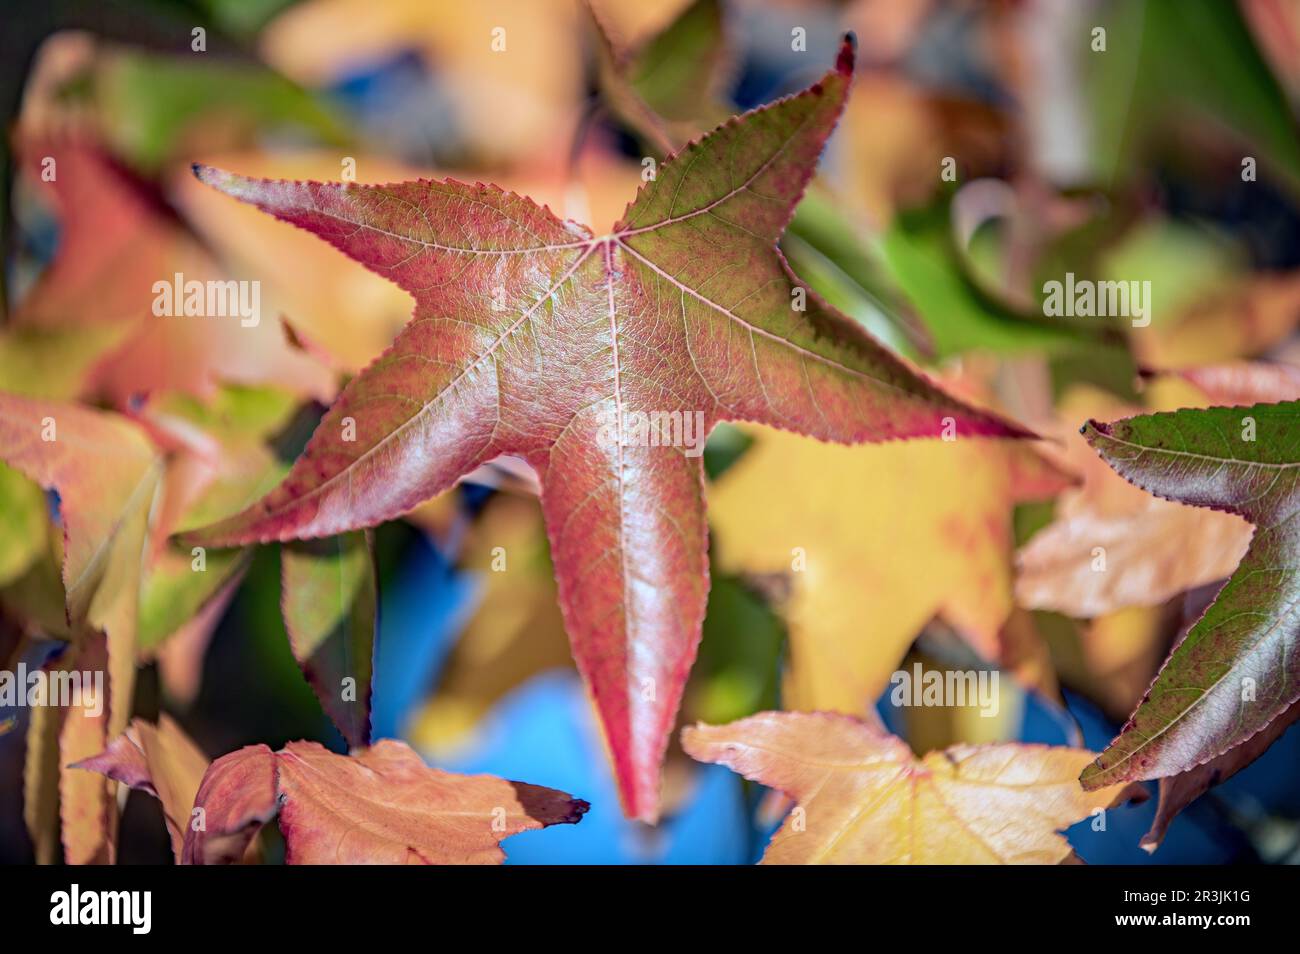 Autumnal Stock Photo